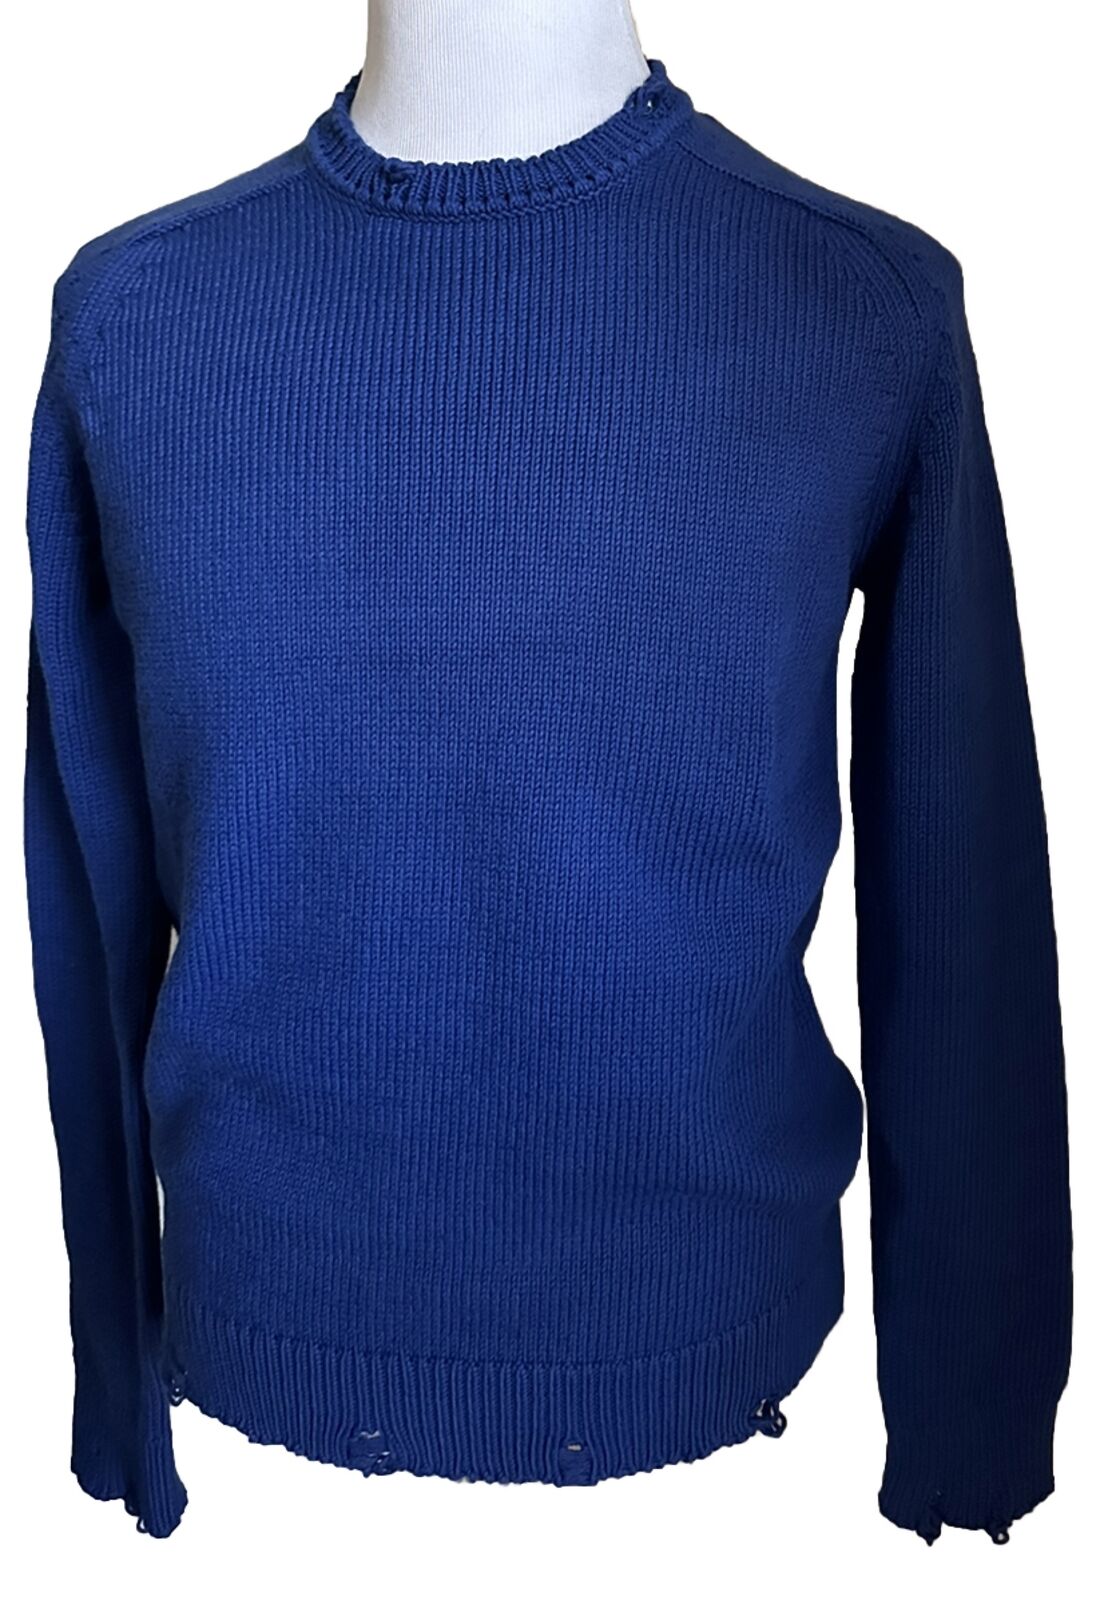 NWT $890 Мужской свитер с круглым вырезом Saint Laurent синий размер L Италия